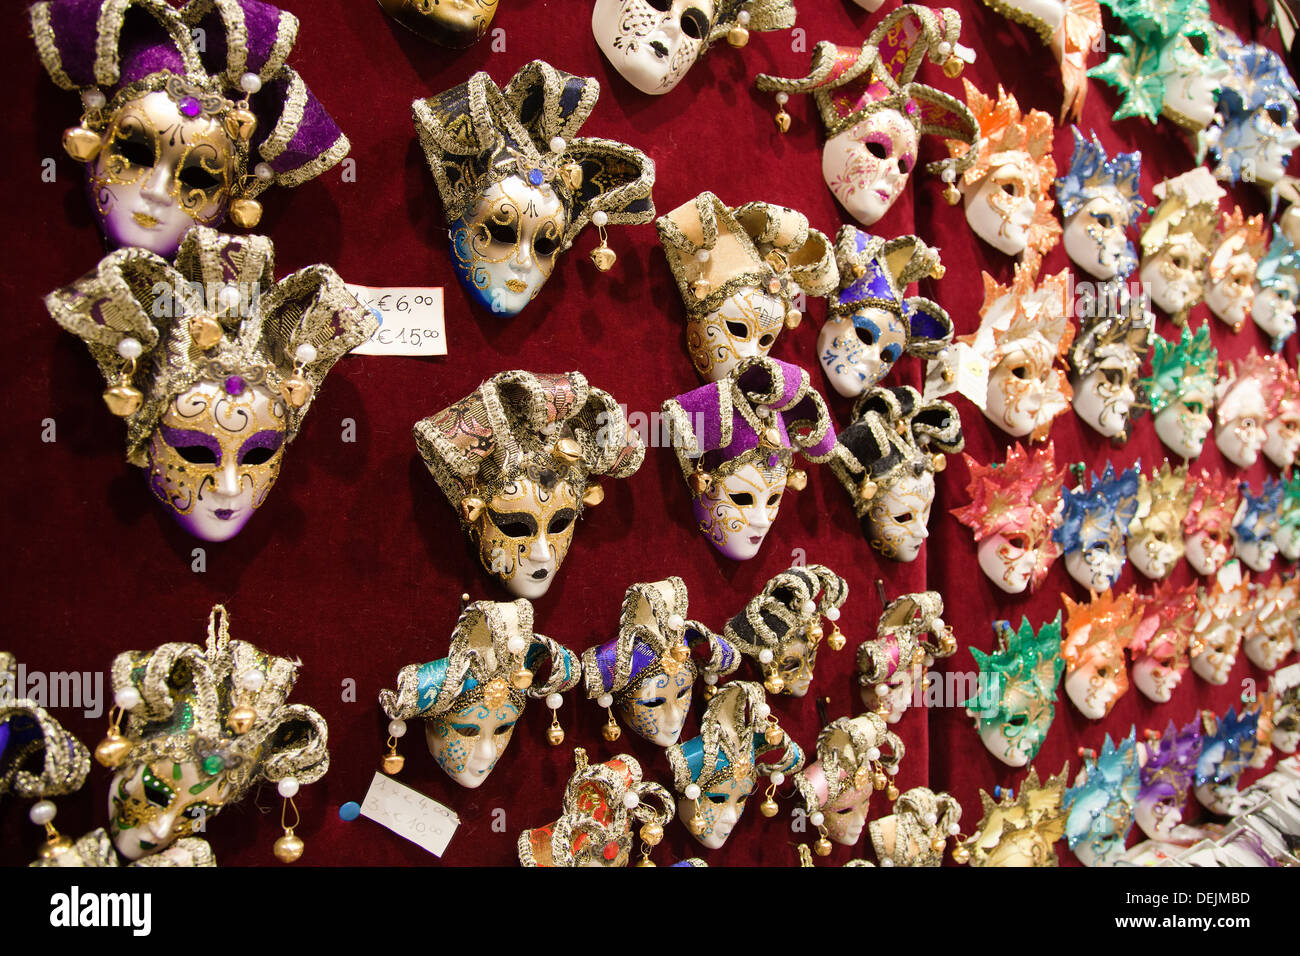 Venice Carnival Masks, Italy Stock Photo